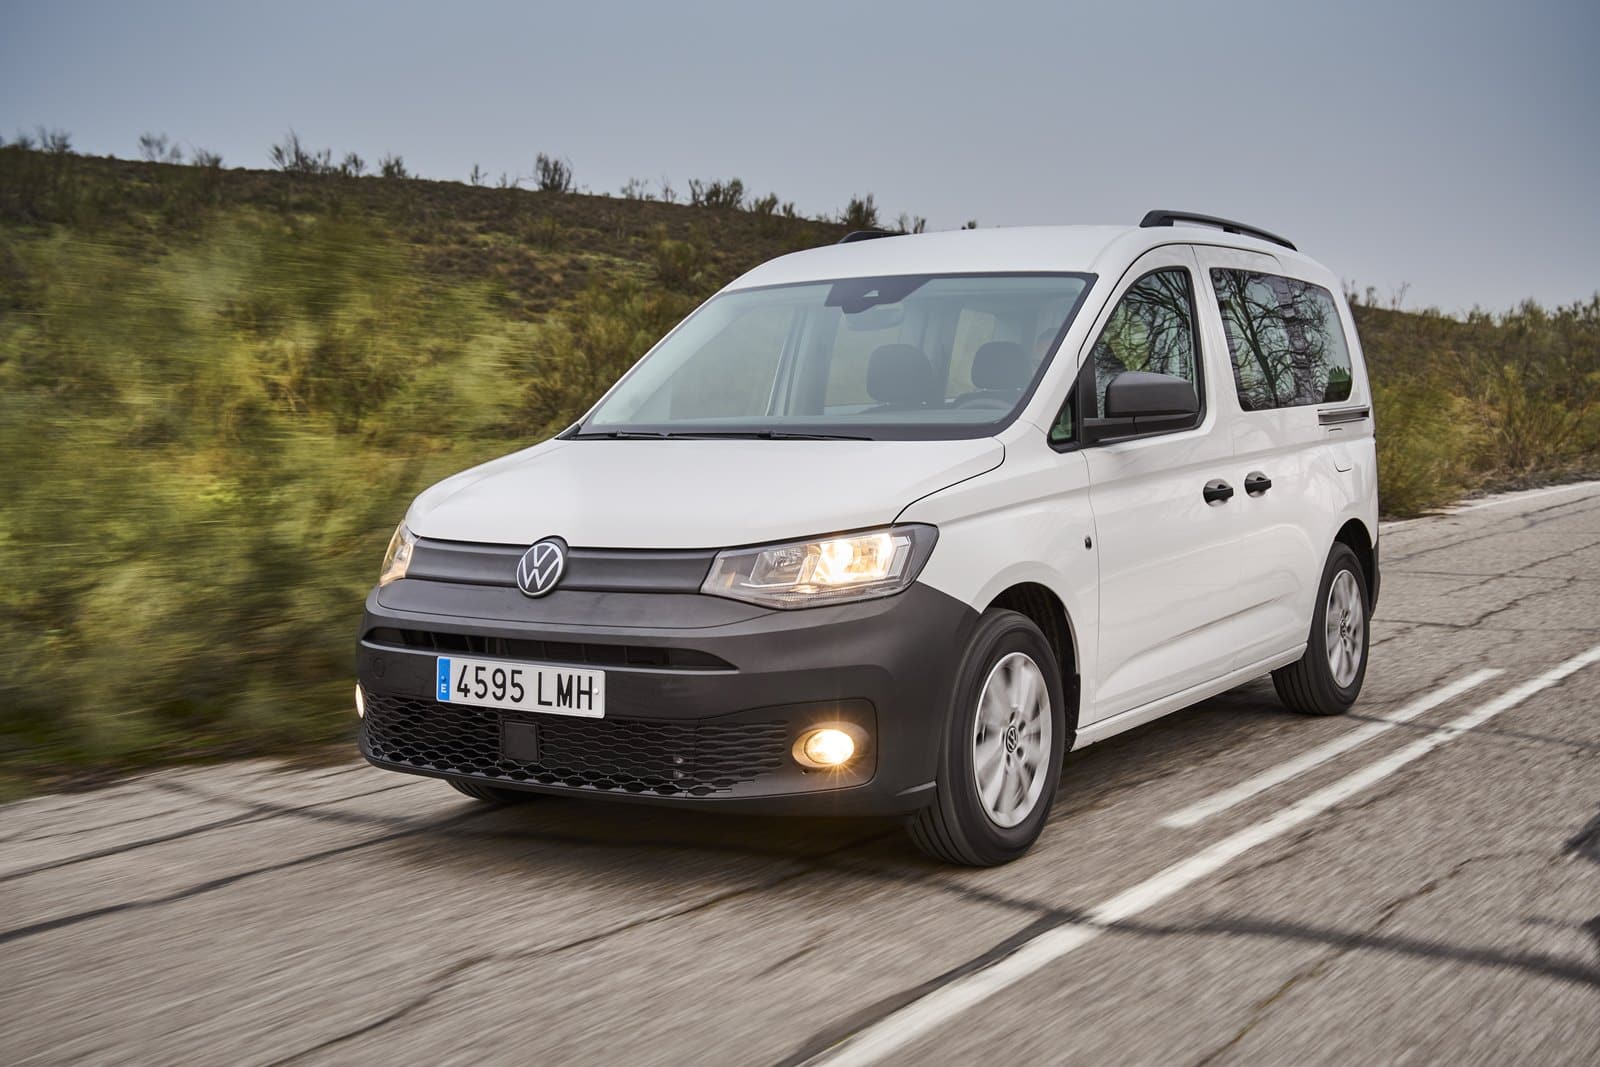 Precios del Volkswagen Caddy M1 nuevo en oferta para todos sus motores y acabados